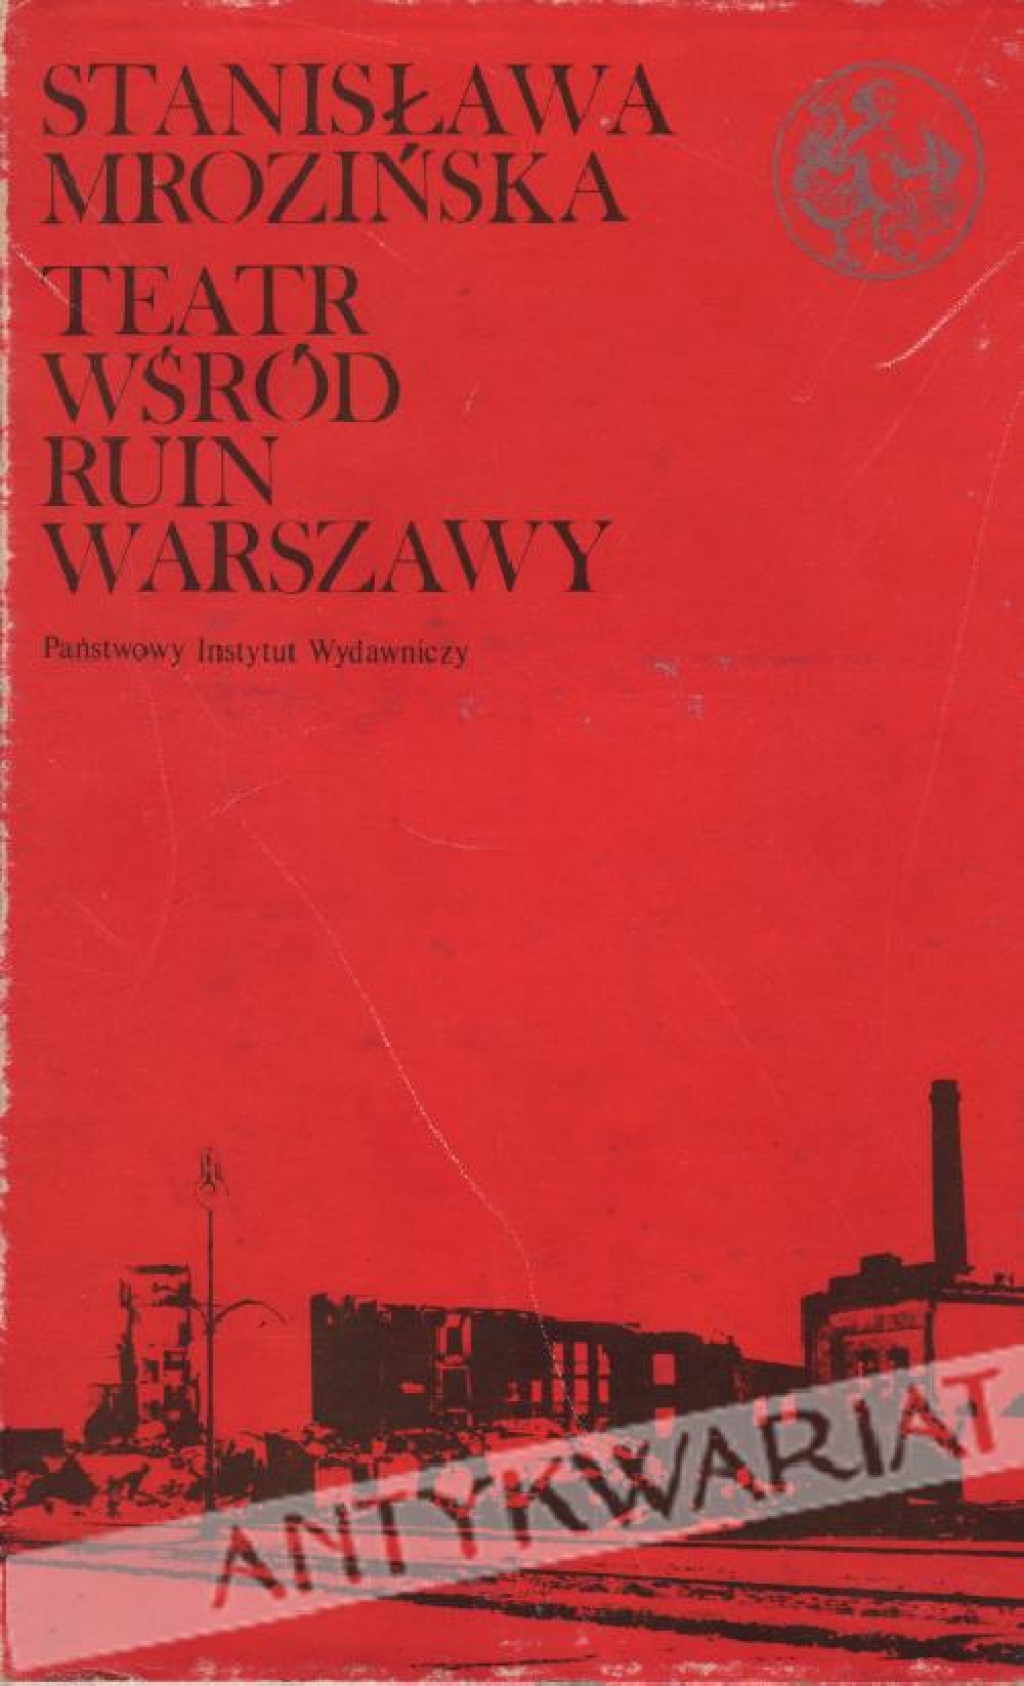 Teatr wśród ruin Warszawy